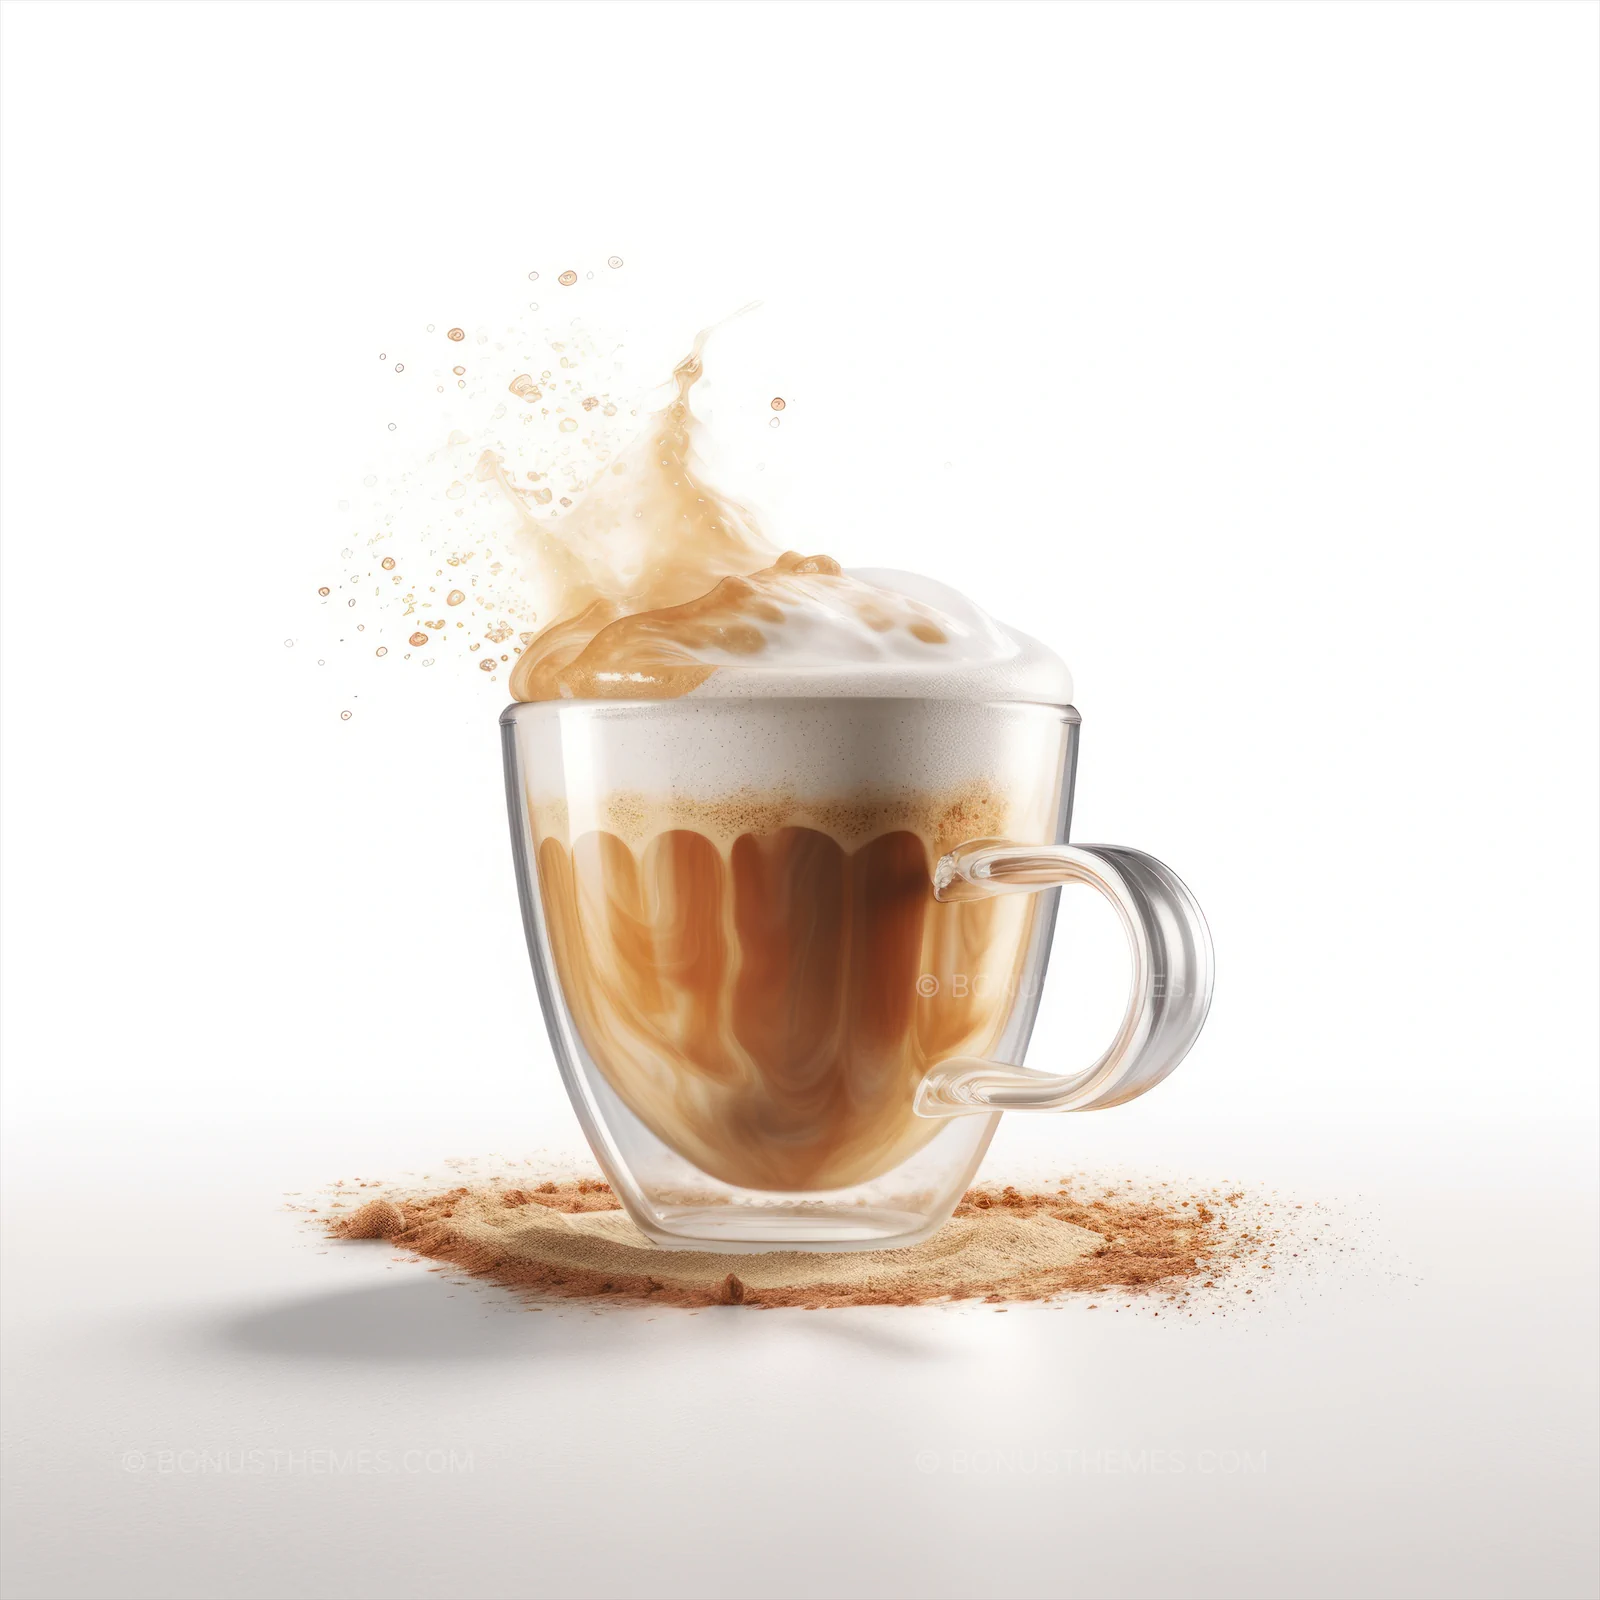 Cup of freshly latte coffee